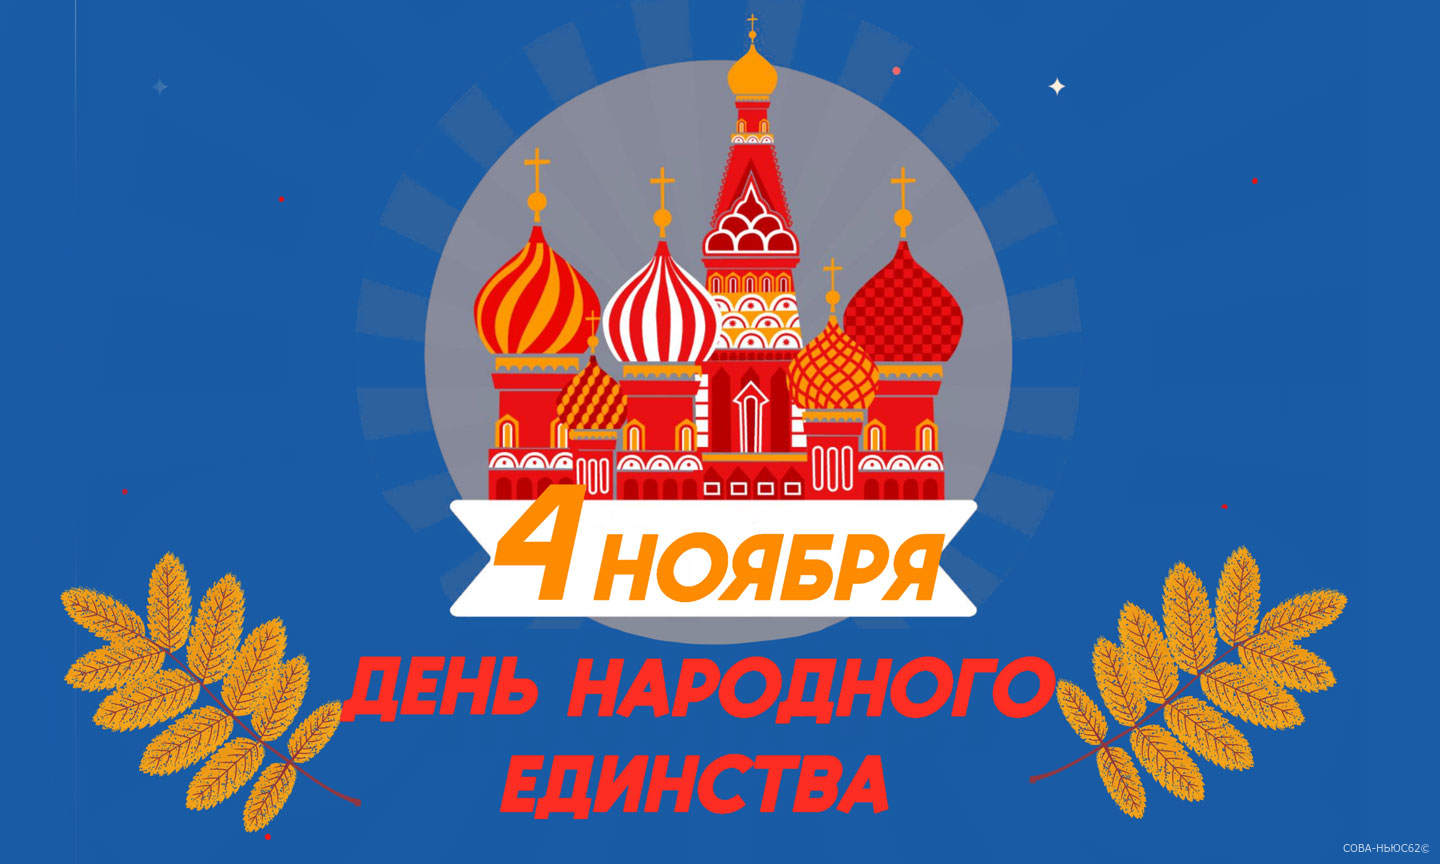 Рязанцев позвали на фестиваль туристических маршрутов 4 ноября